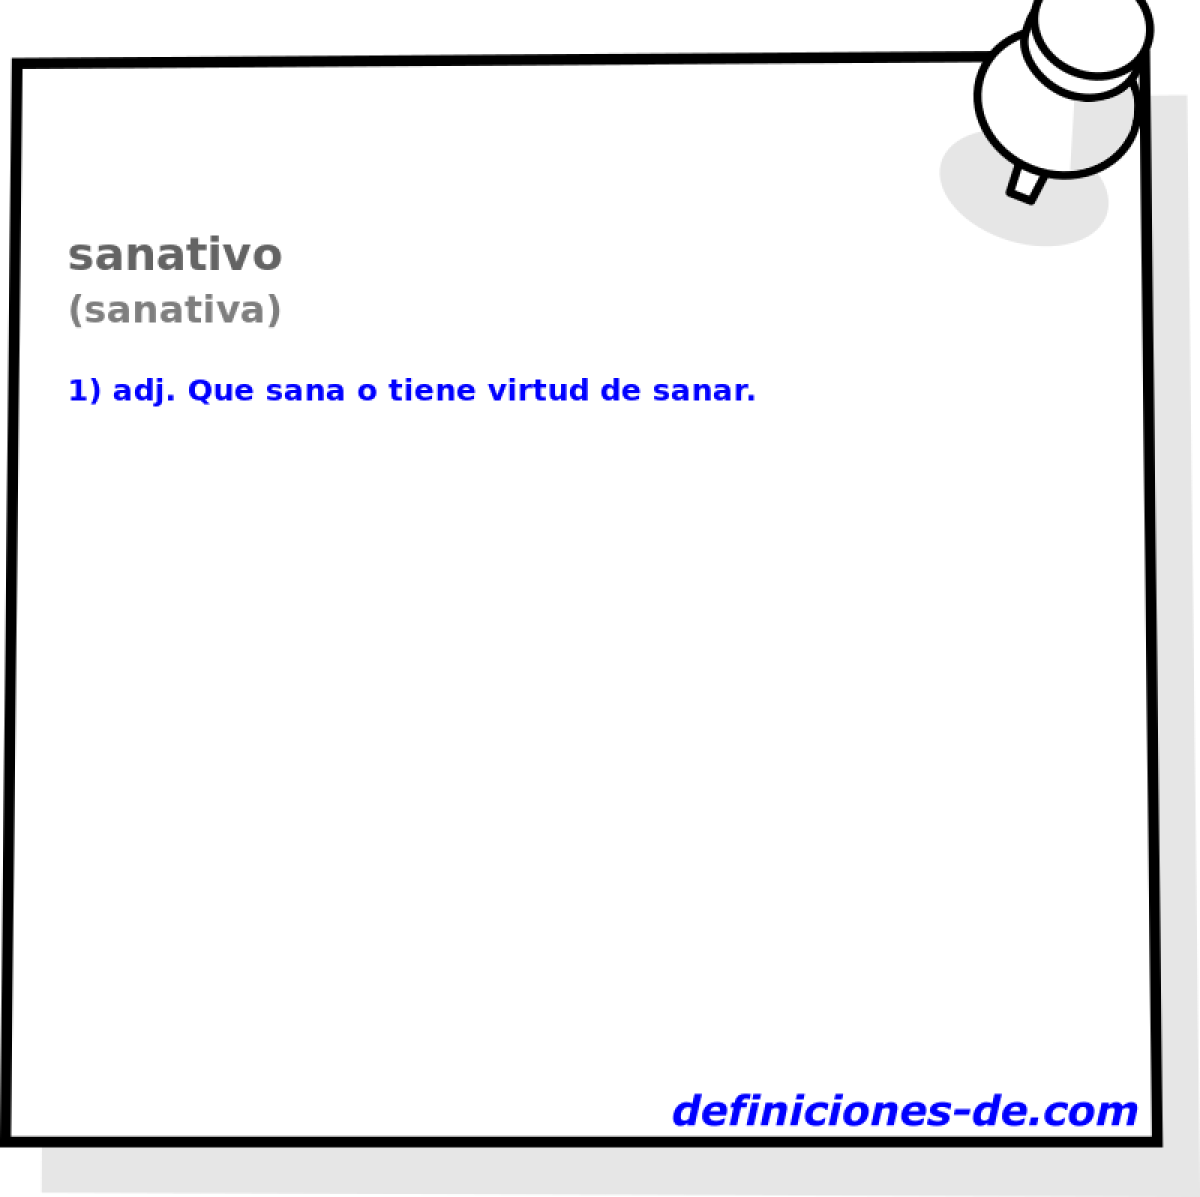 sanativo (sanativa)